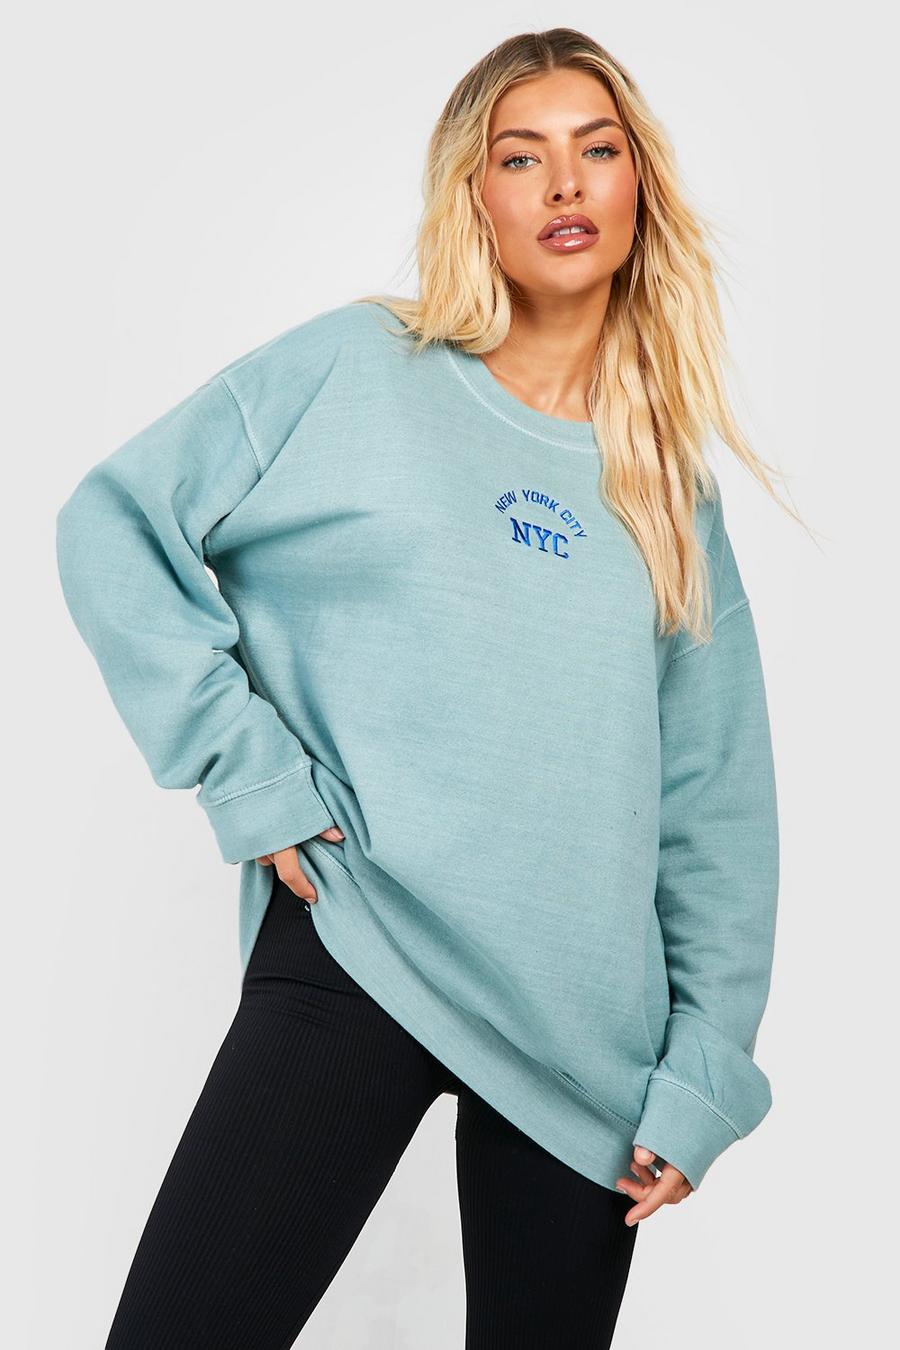 Nyc Slogan Embroidered Overdyed Sweatshirt